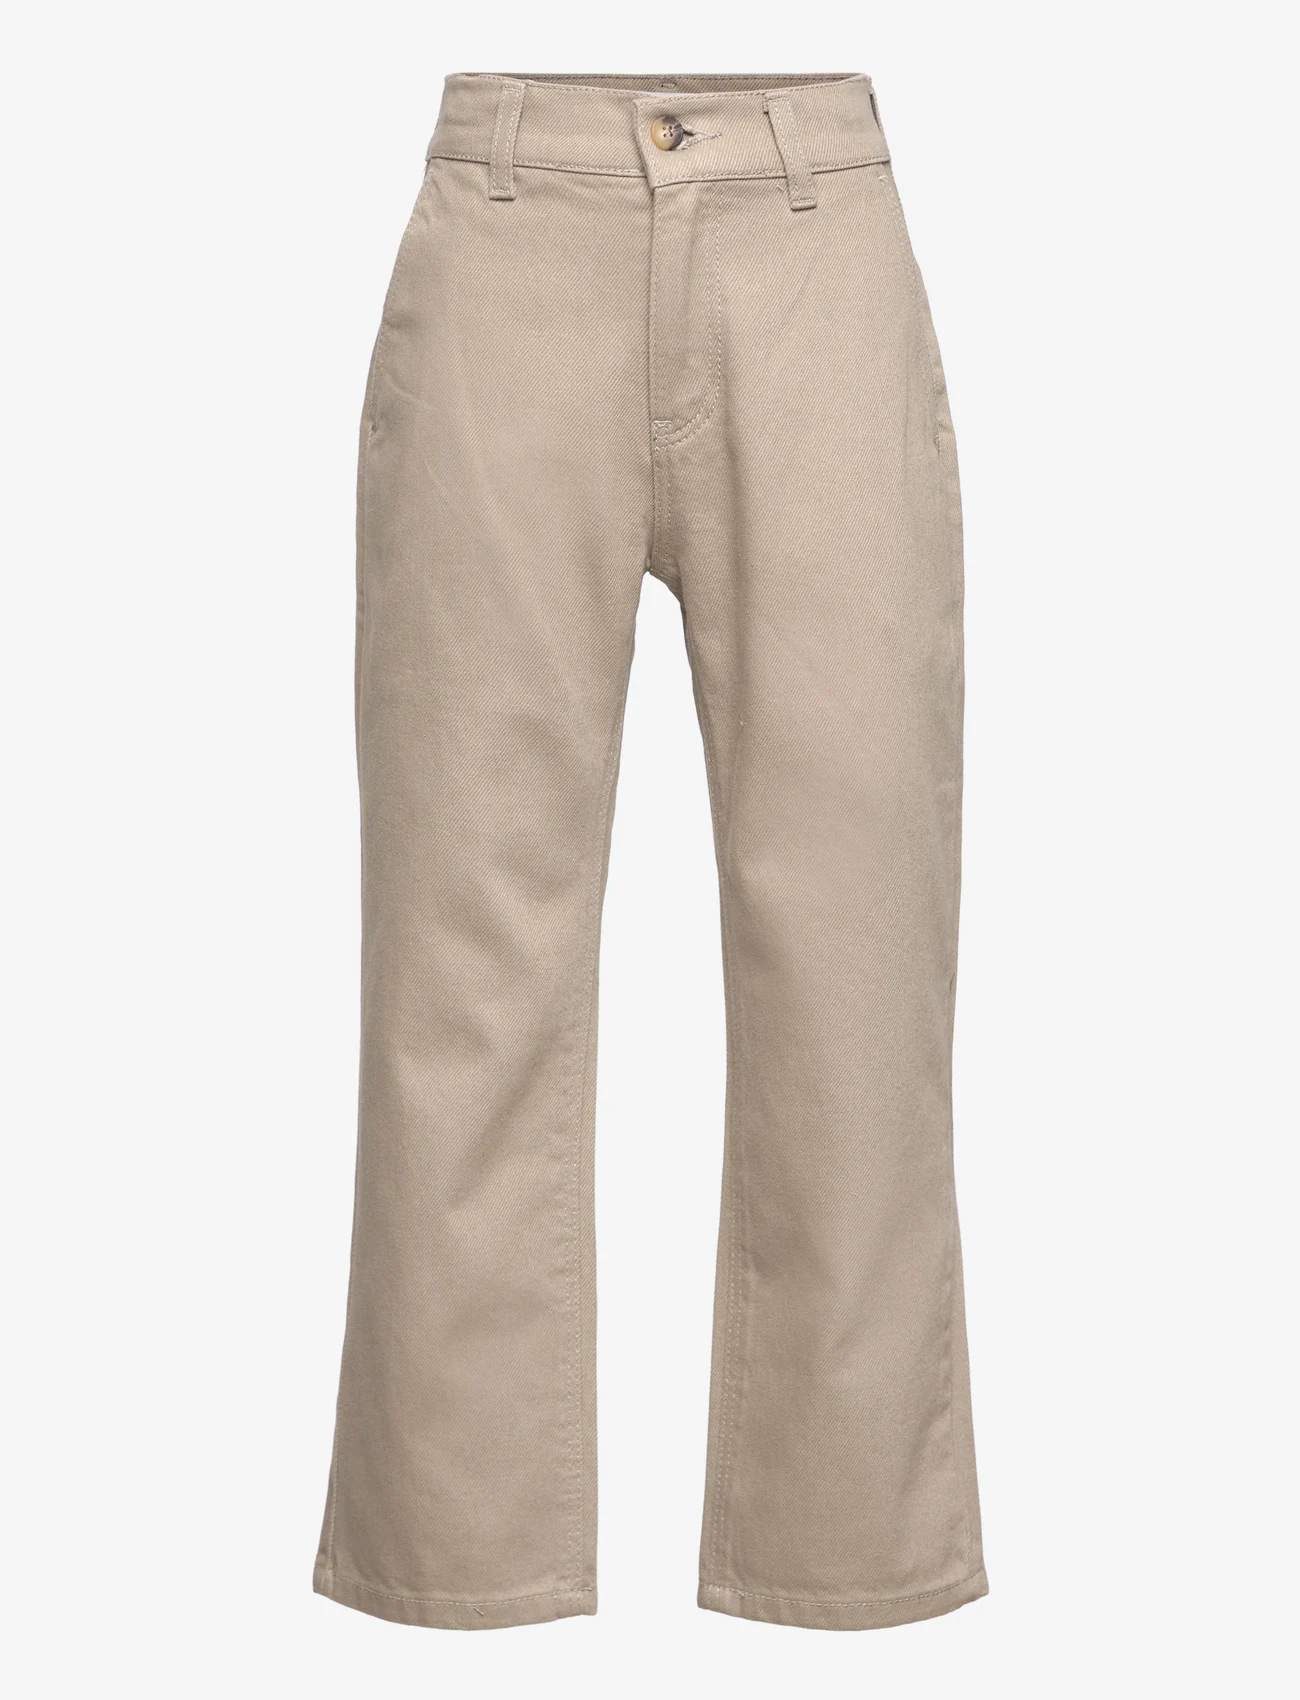 Grunt - Ace Beige Jeans - wide leg jeans - beige - 0